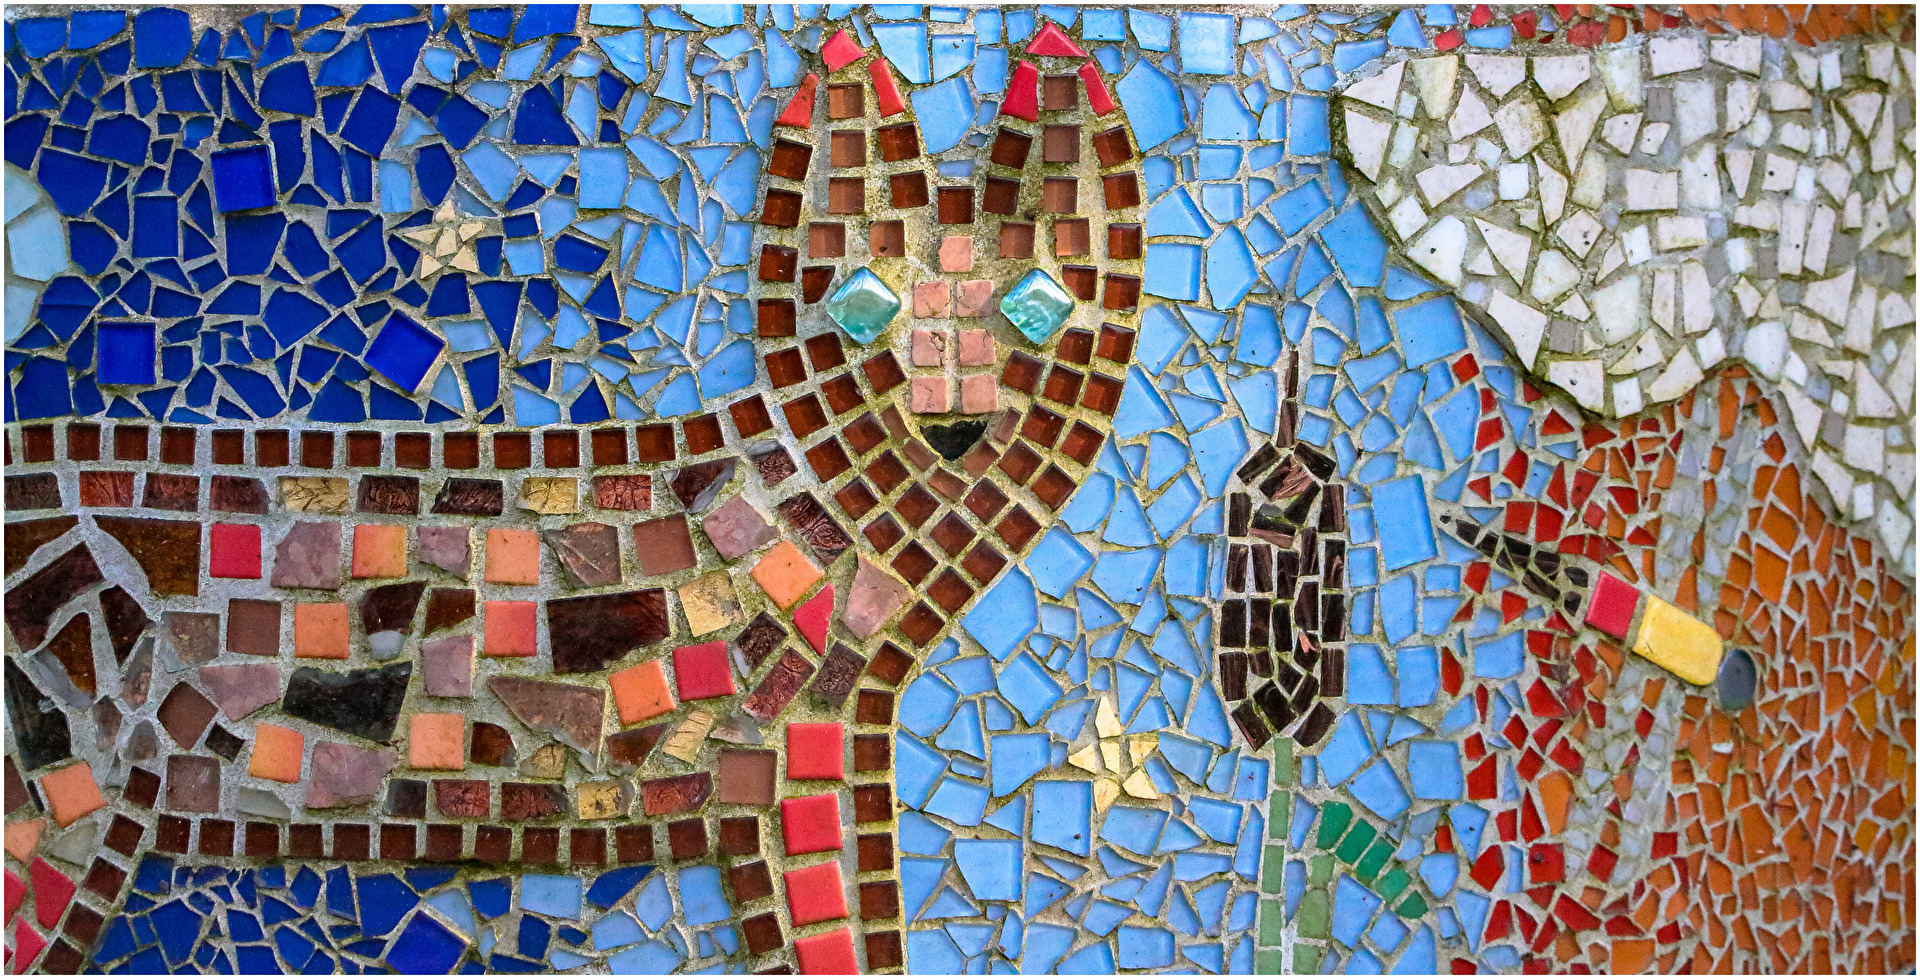 Wasserschöpfstellen-Mosaik